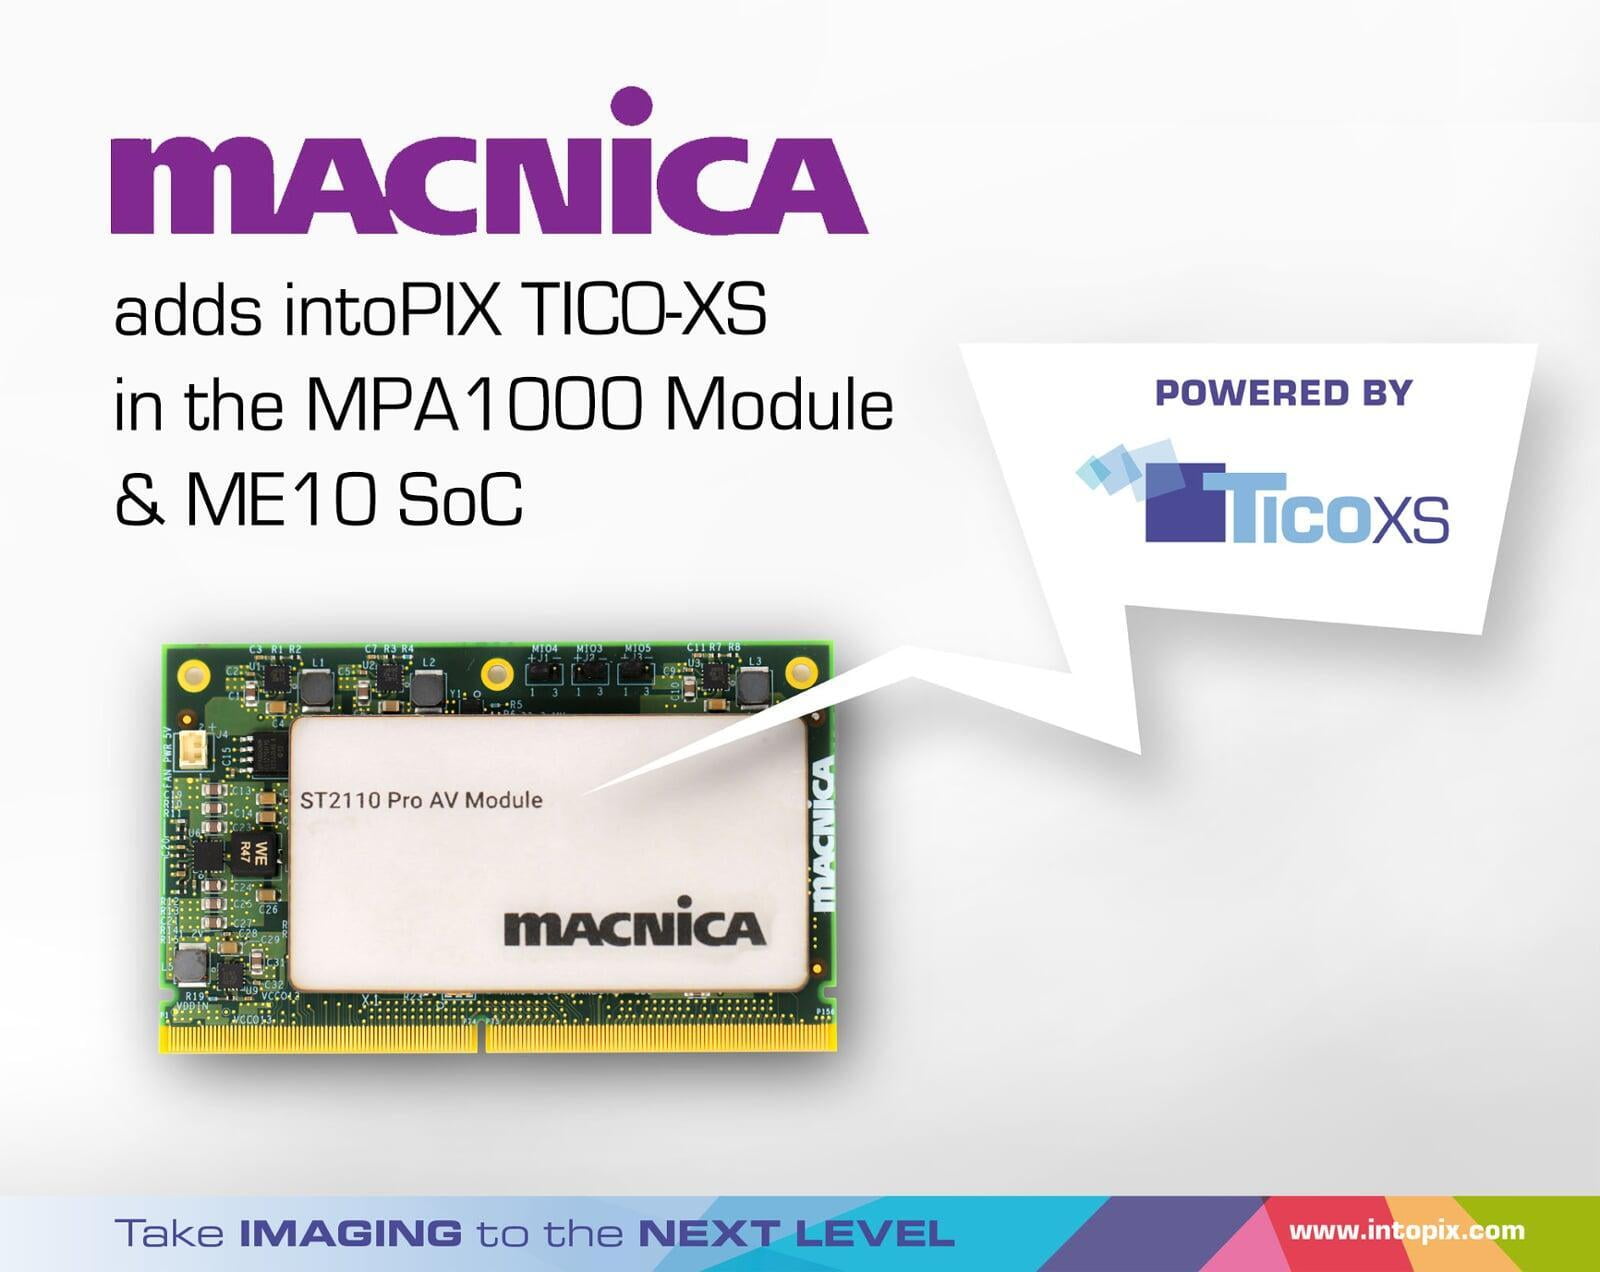 Macnica 採用 intoPIX TicoXS 的 4K ProAV OEM 解決方案